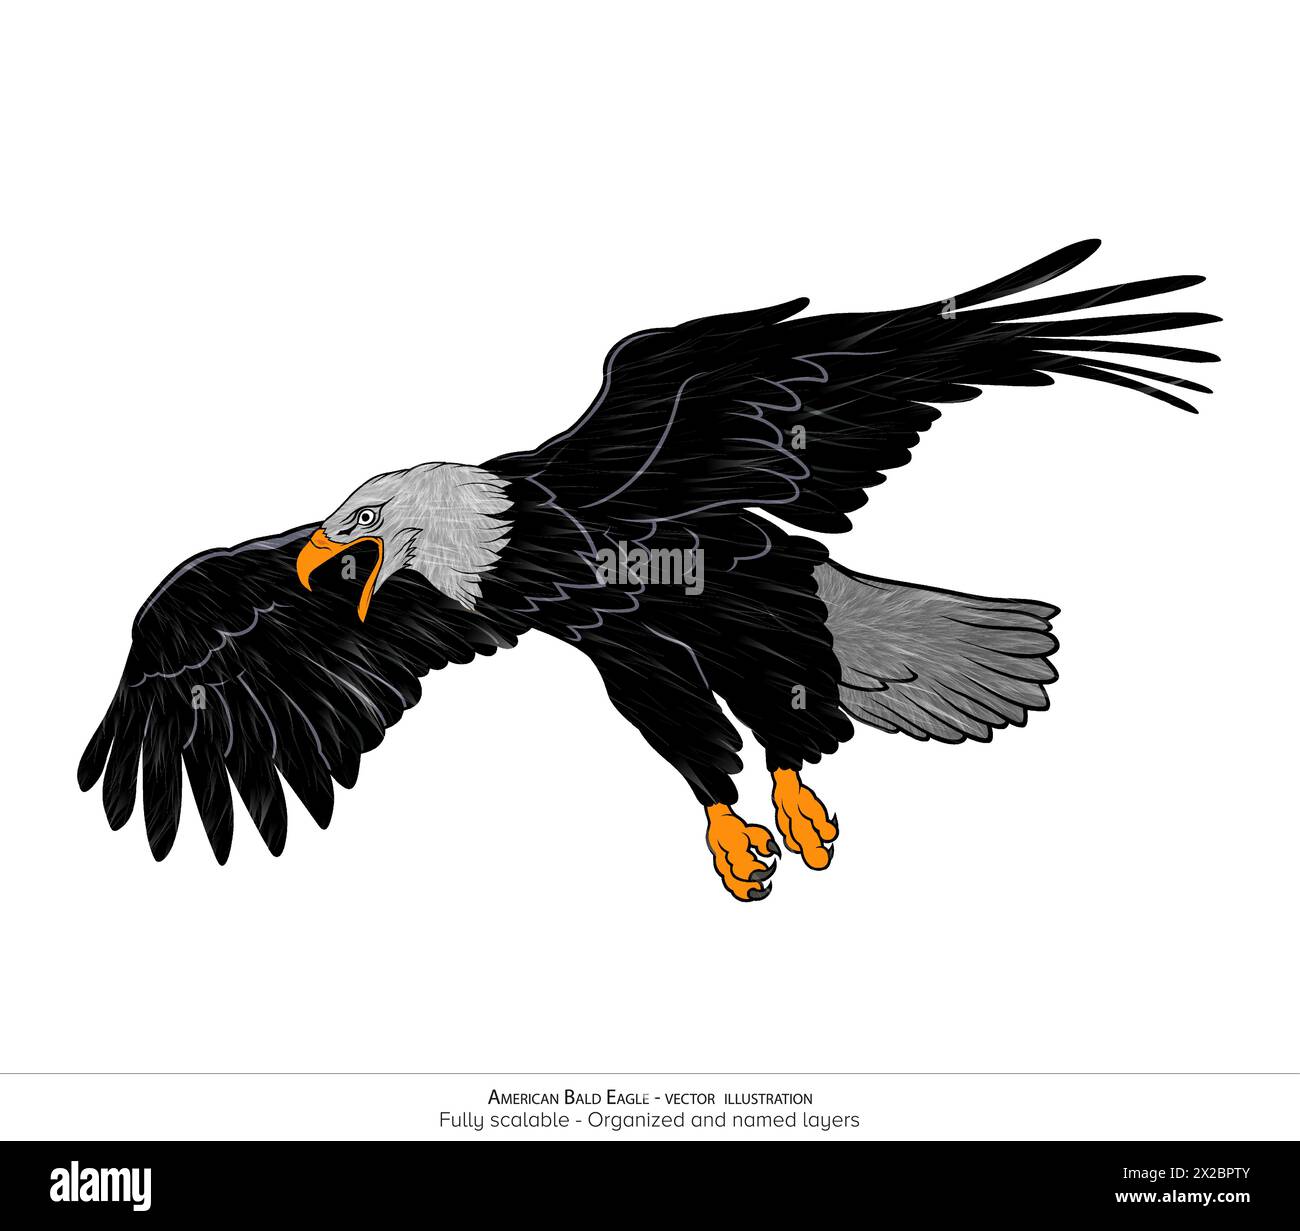 Réaliste American Bald Eagle Vector illustration - superposé et organisé avec de la fourrure détaillée Illustration de Vecteur